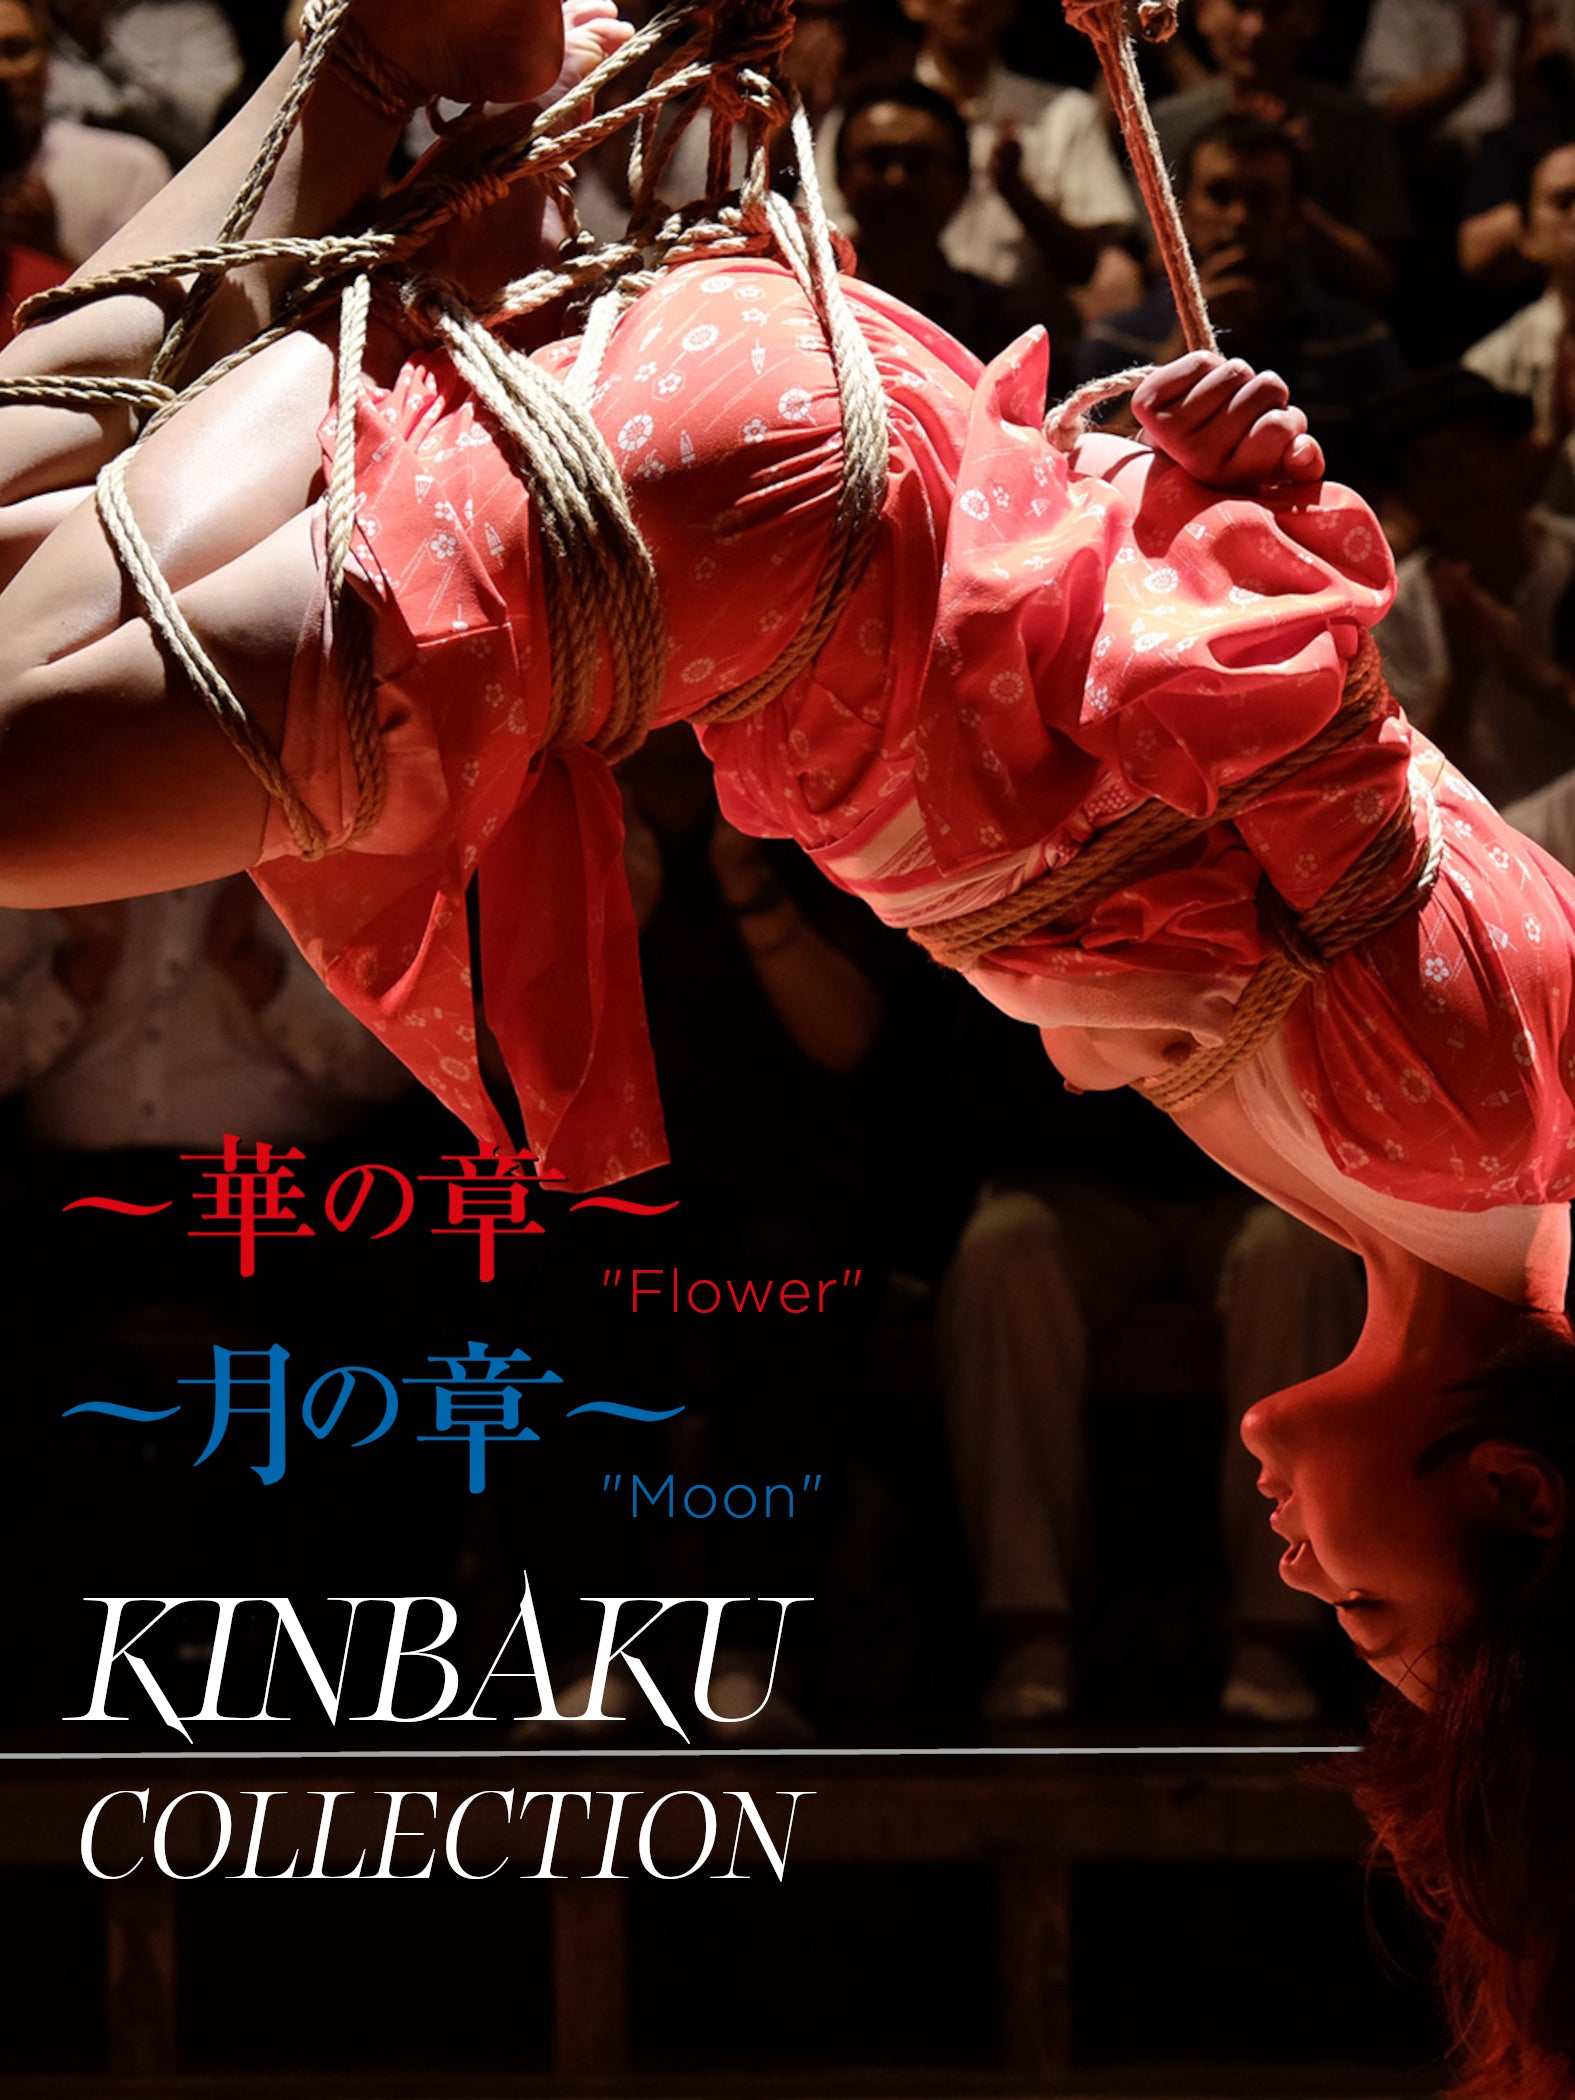 KINBAKU COLLECTION: FLOWER AND MOON BLU-RAY